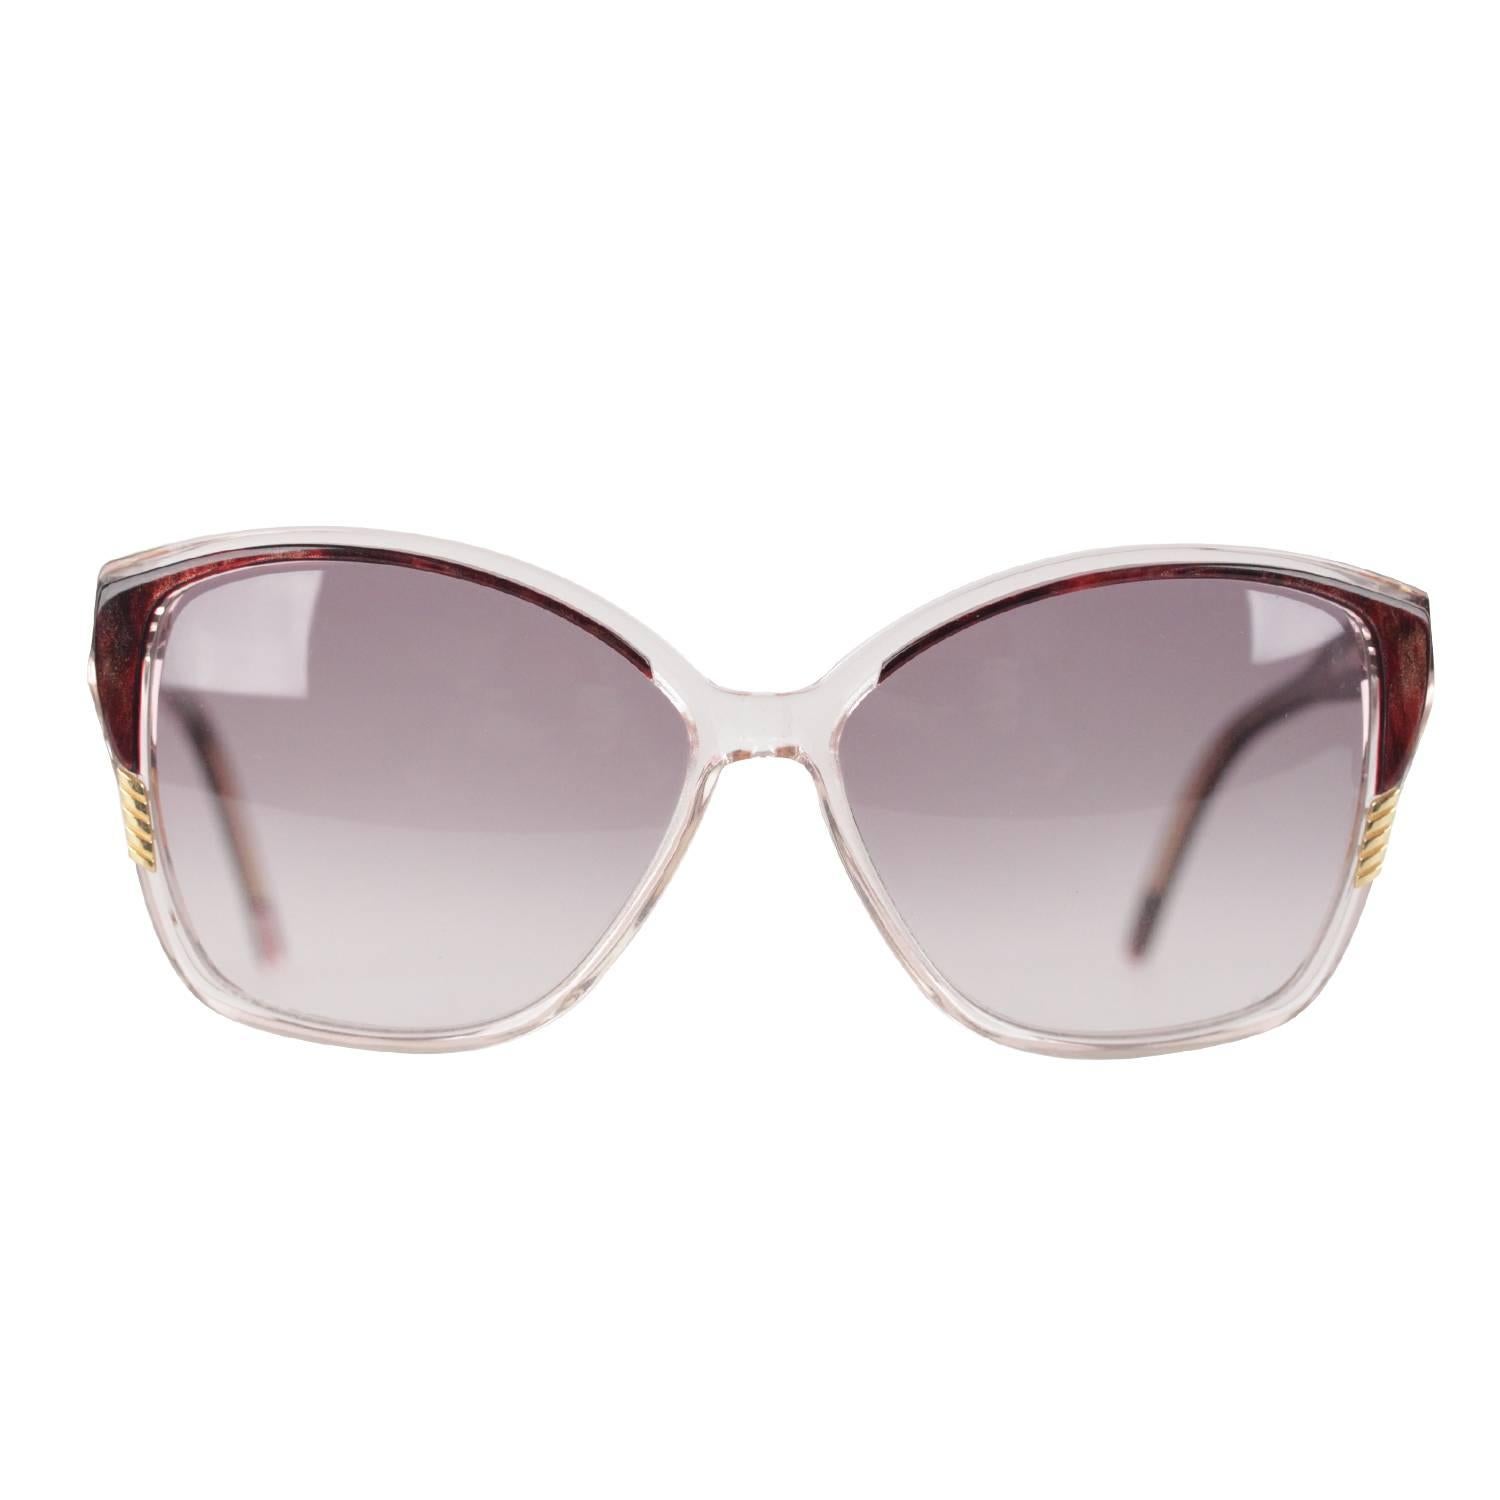 YVES SAINT LAURENT Vintage MINT Marbled Handmade Sunglasses 8728 P 124